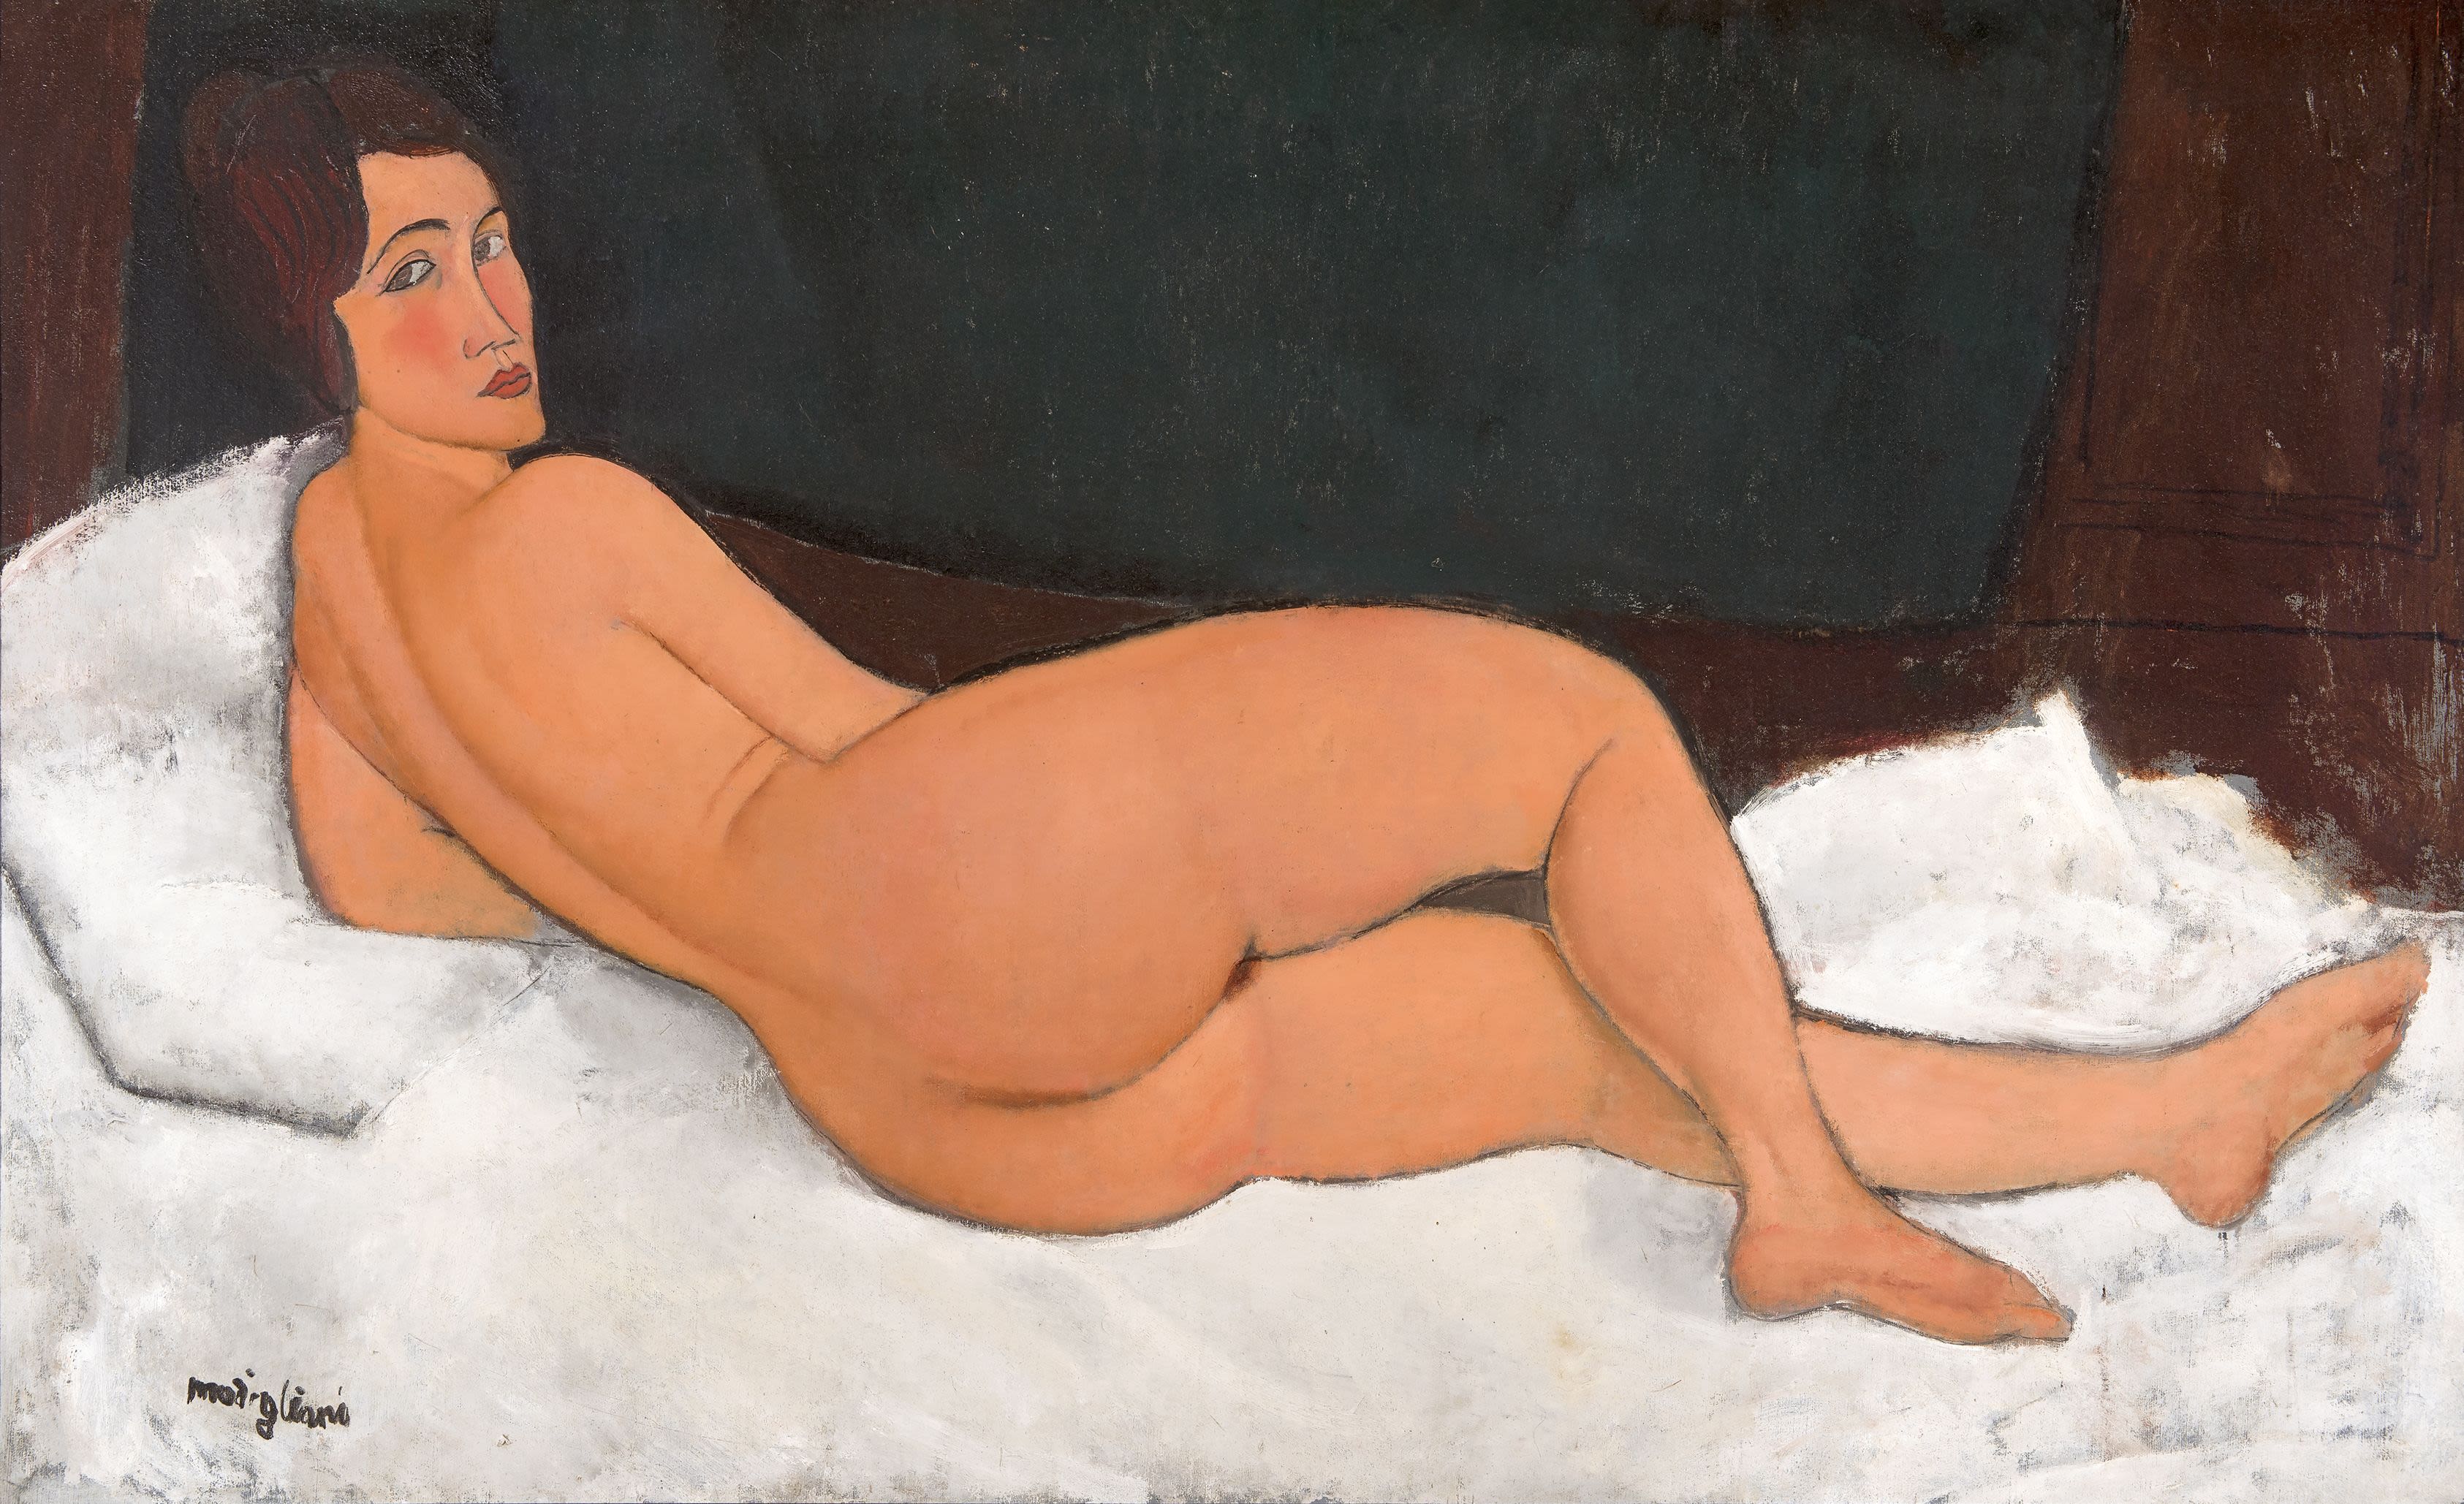 1960s Nudist - Nude art and censorship laid bare | CNN